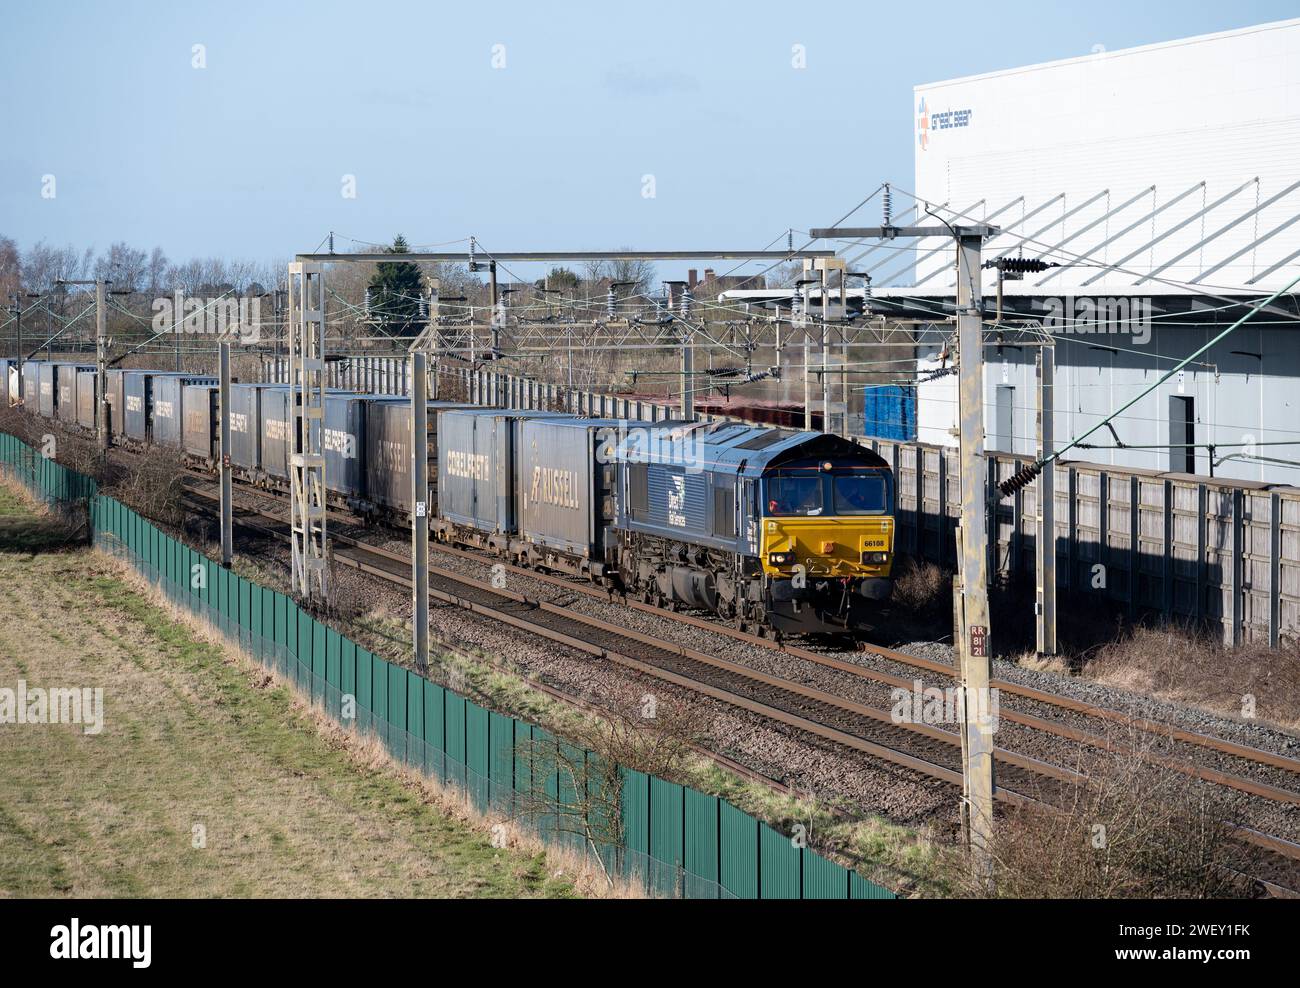 Direct Rail Services locomotive diesel de classe 66 no 66108 tirant un train de conteneurs à DIRFT, Northamptonshire, Angleterre, Royaume-Uni Banque D'Images